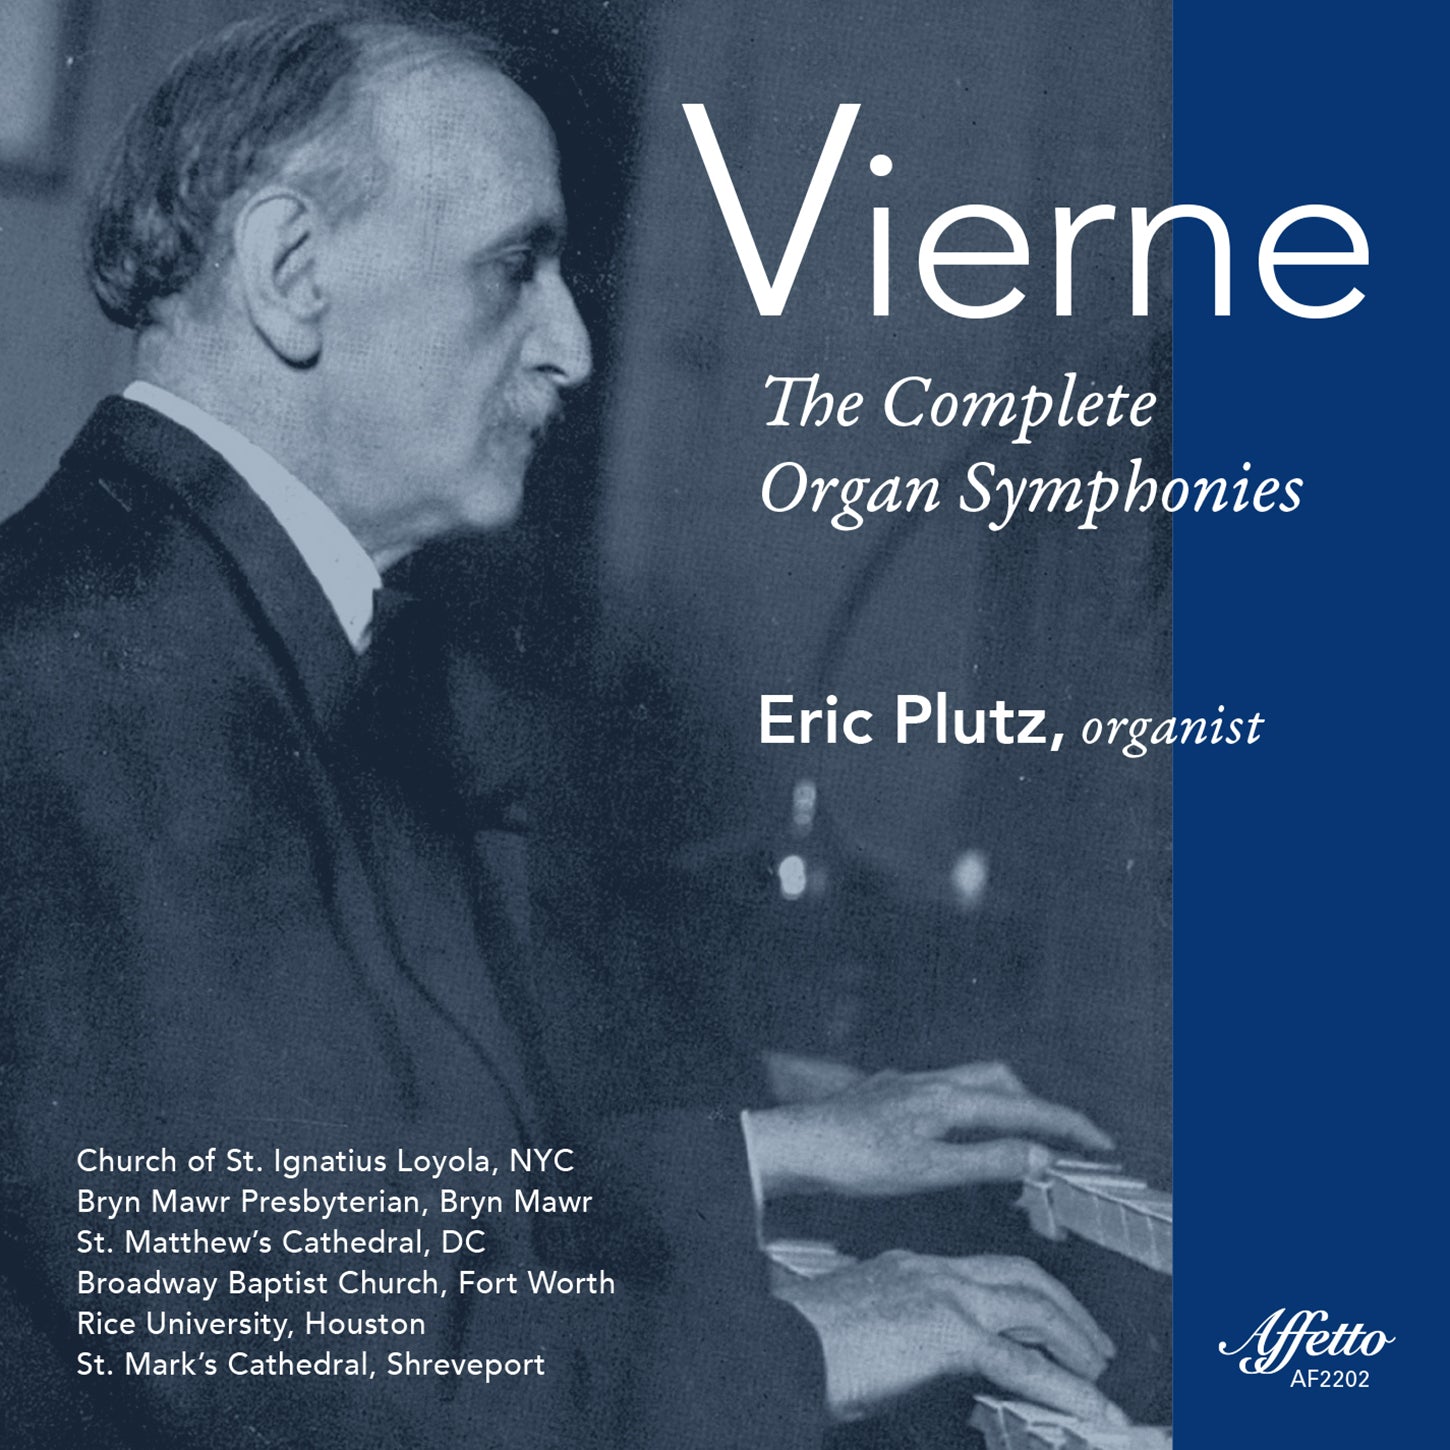 Vierne: The Complete Organ Symphonies / Eric Plutz